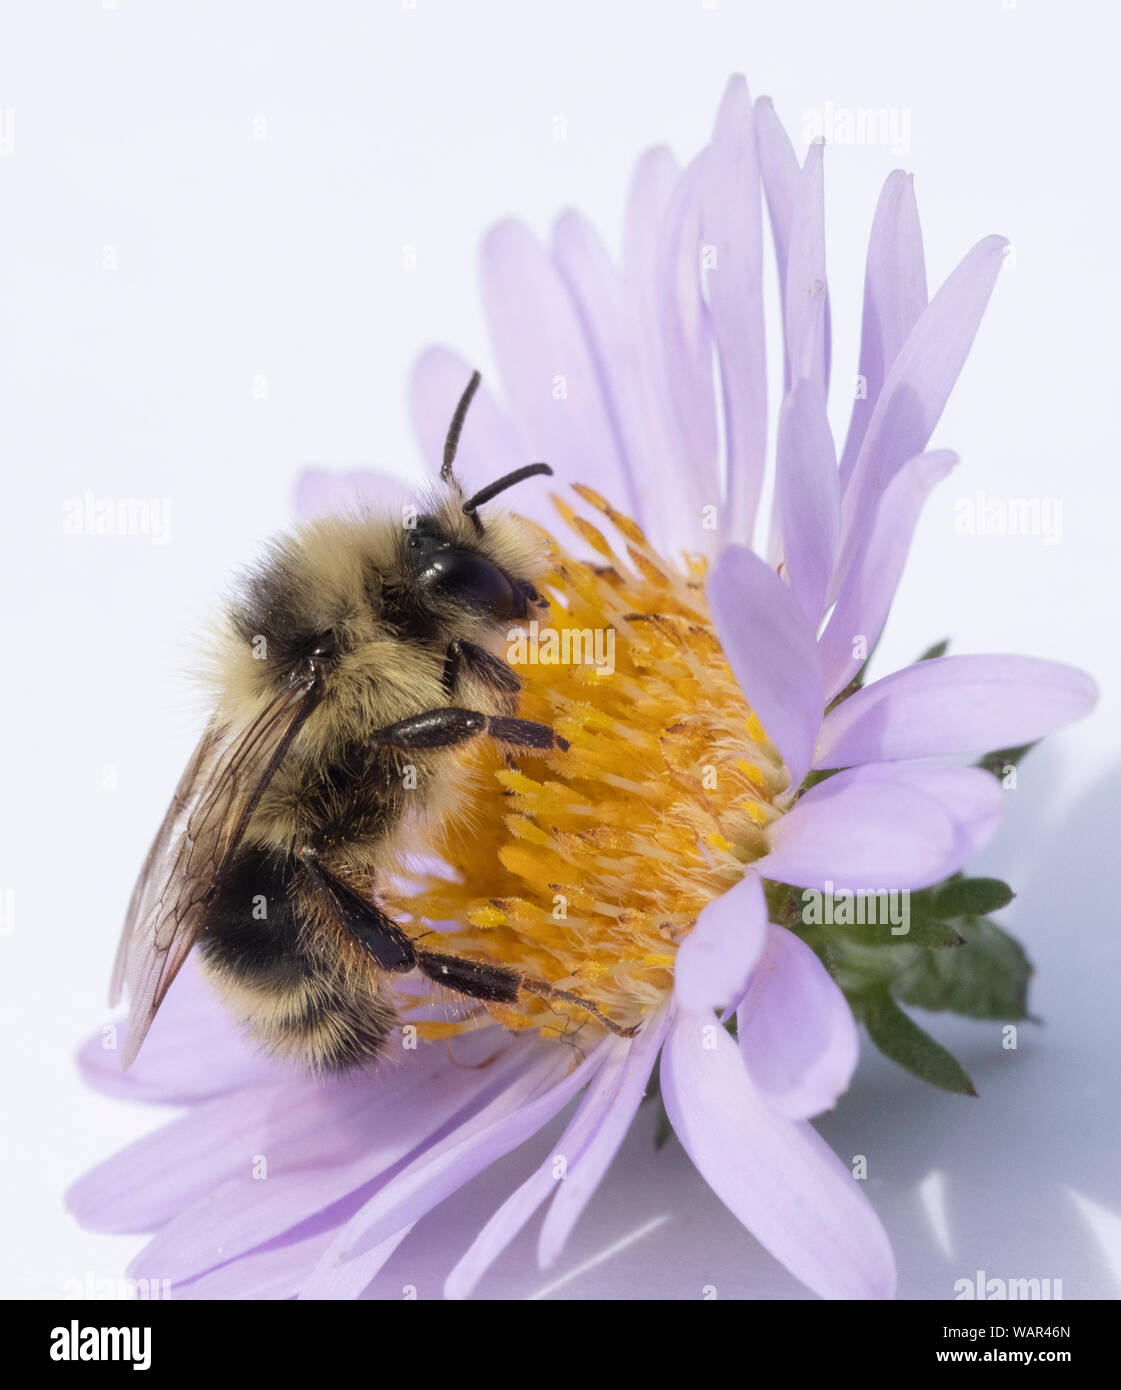 Bumble Bee rovistando sul fiore Aster Foto Stock